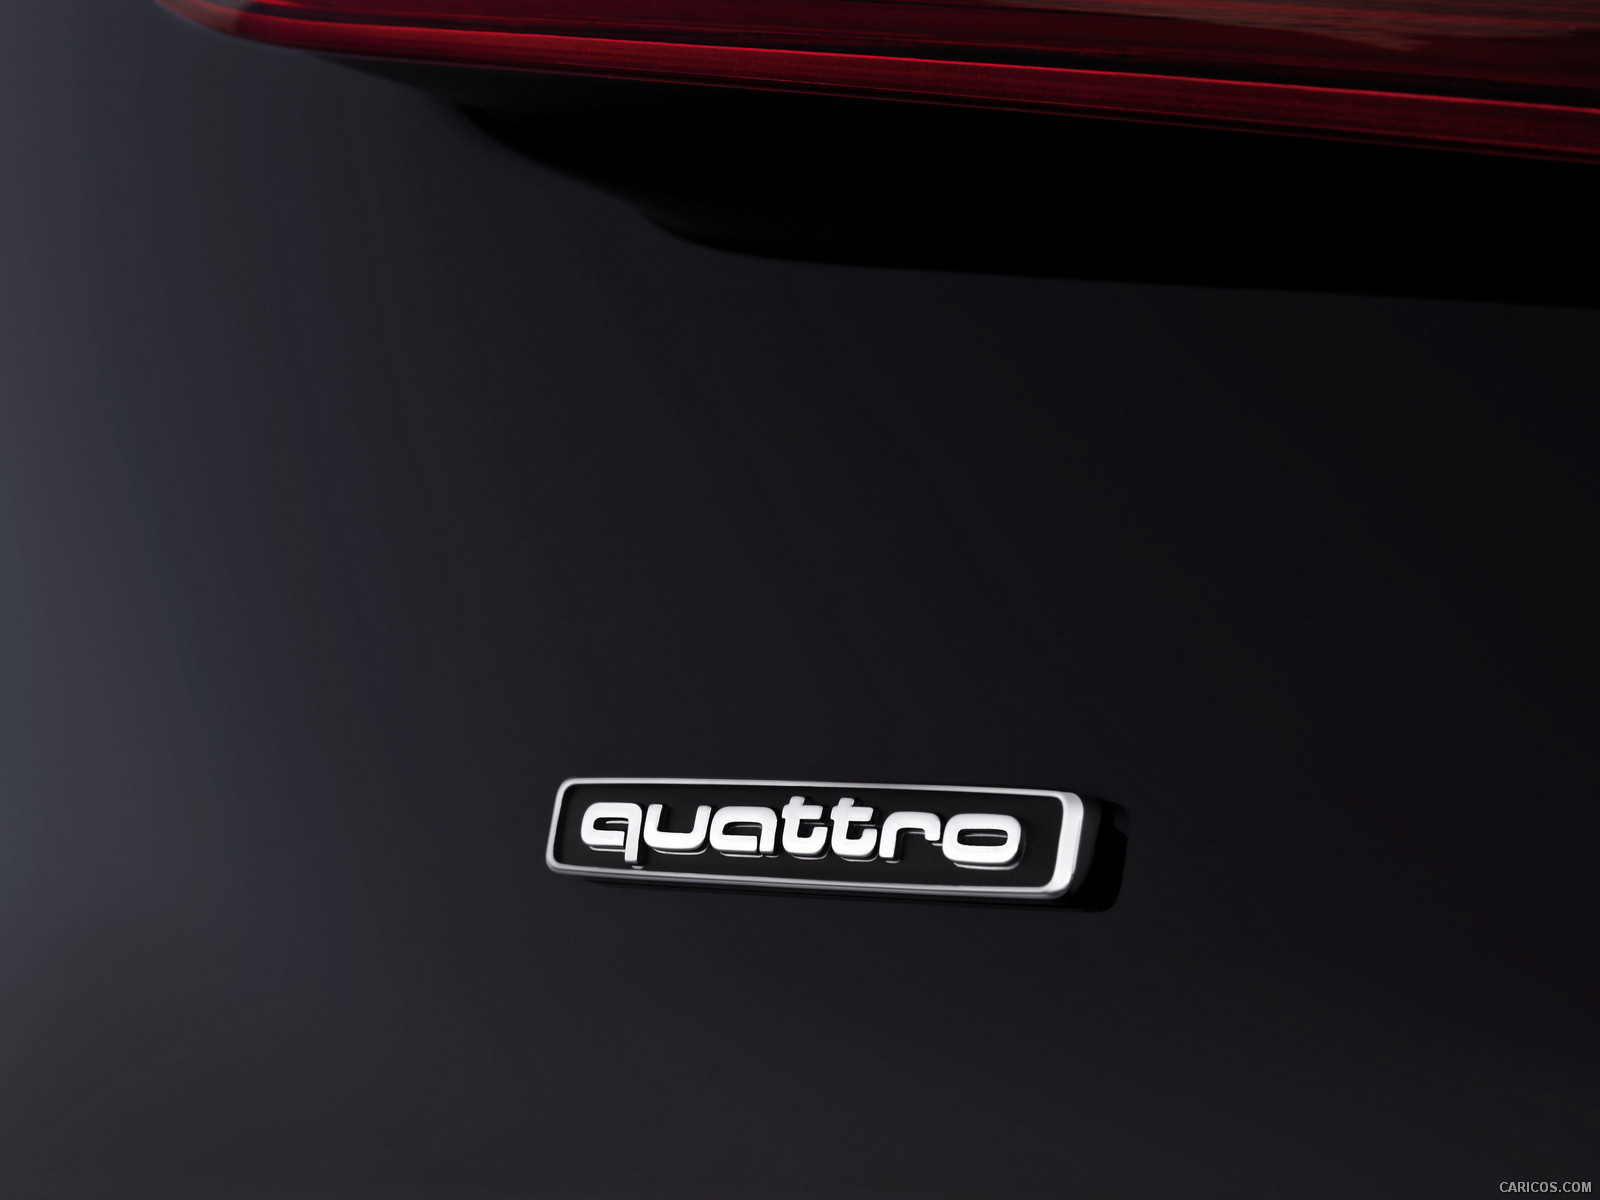 Audi A1 Quattro Badge Wallpaper